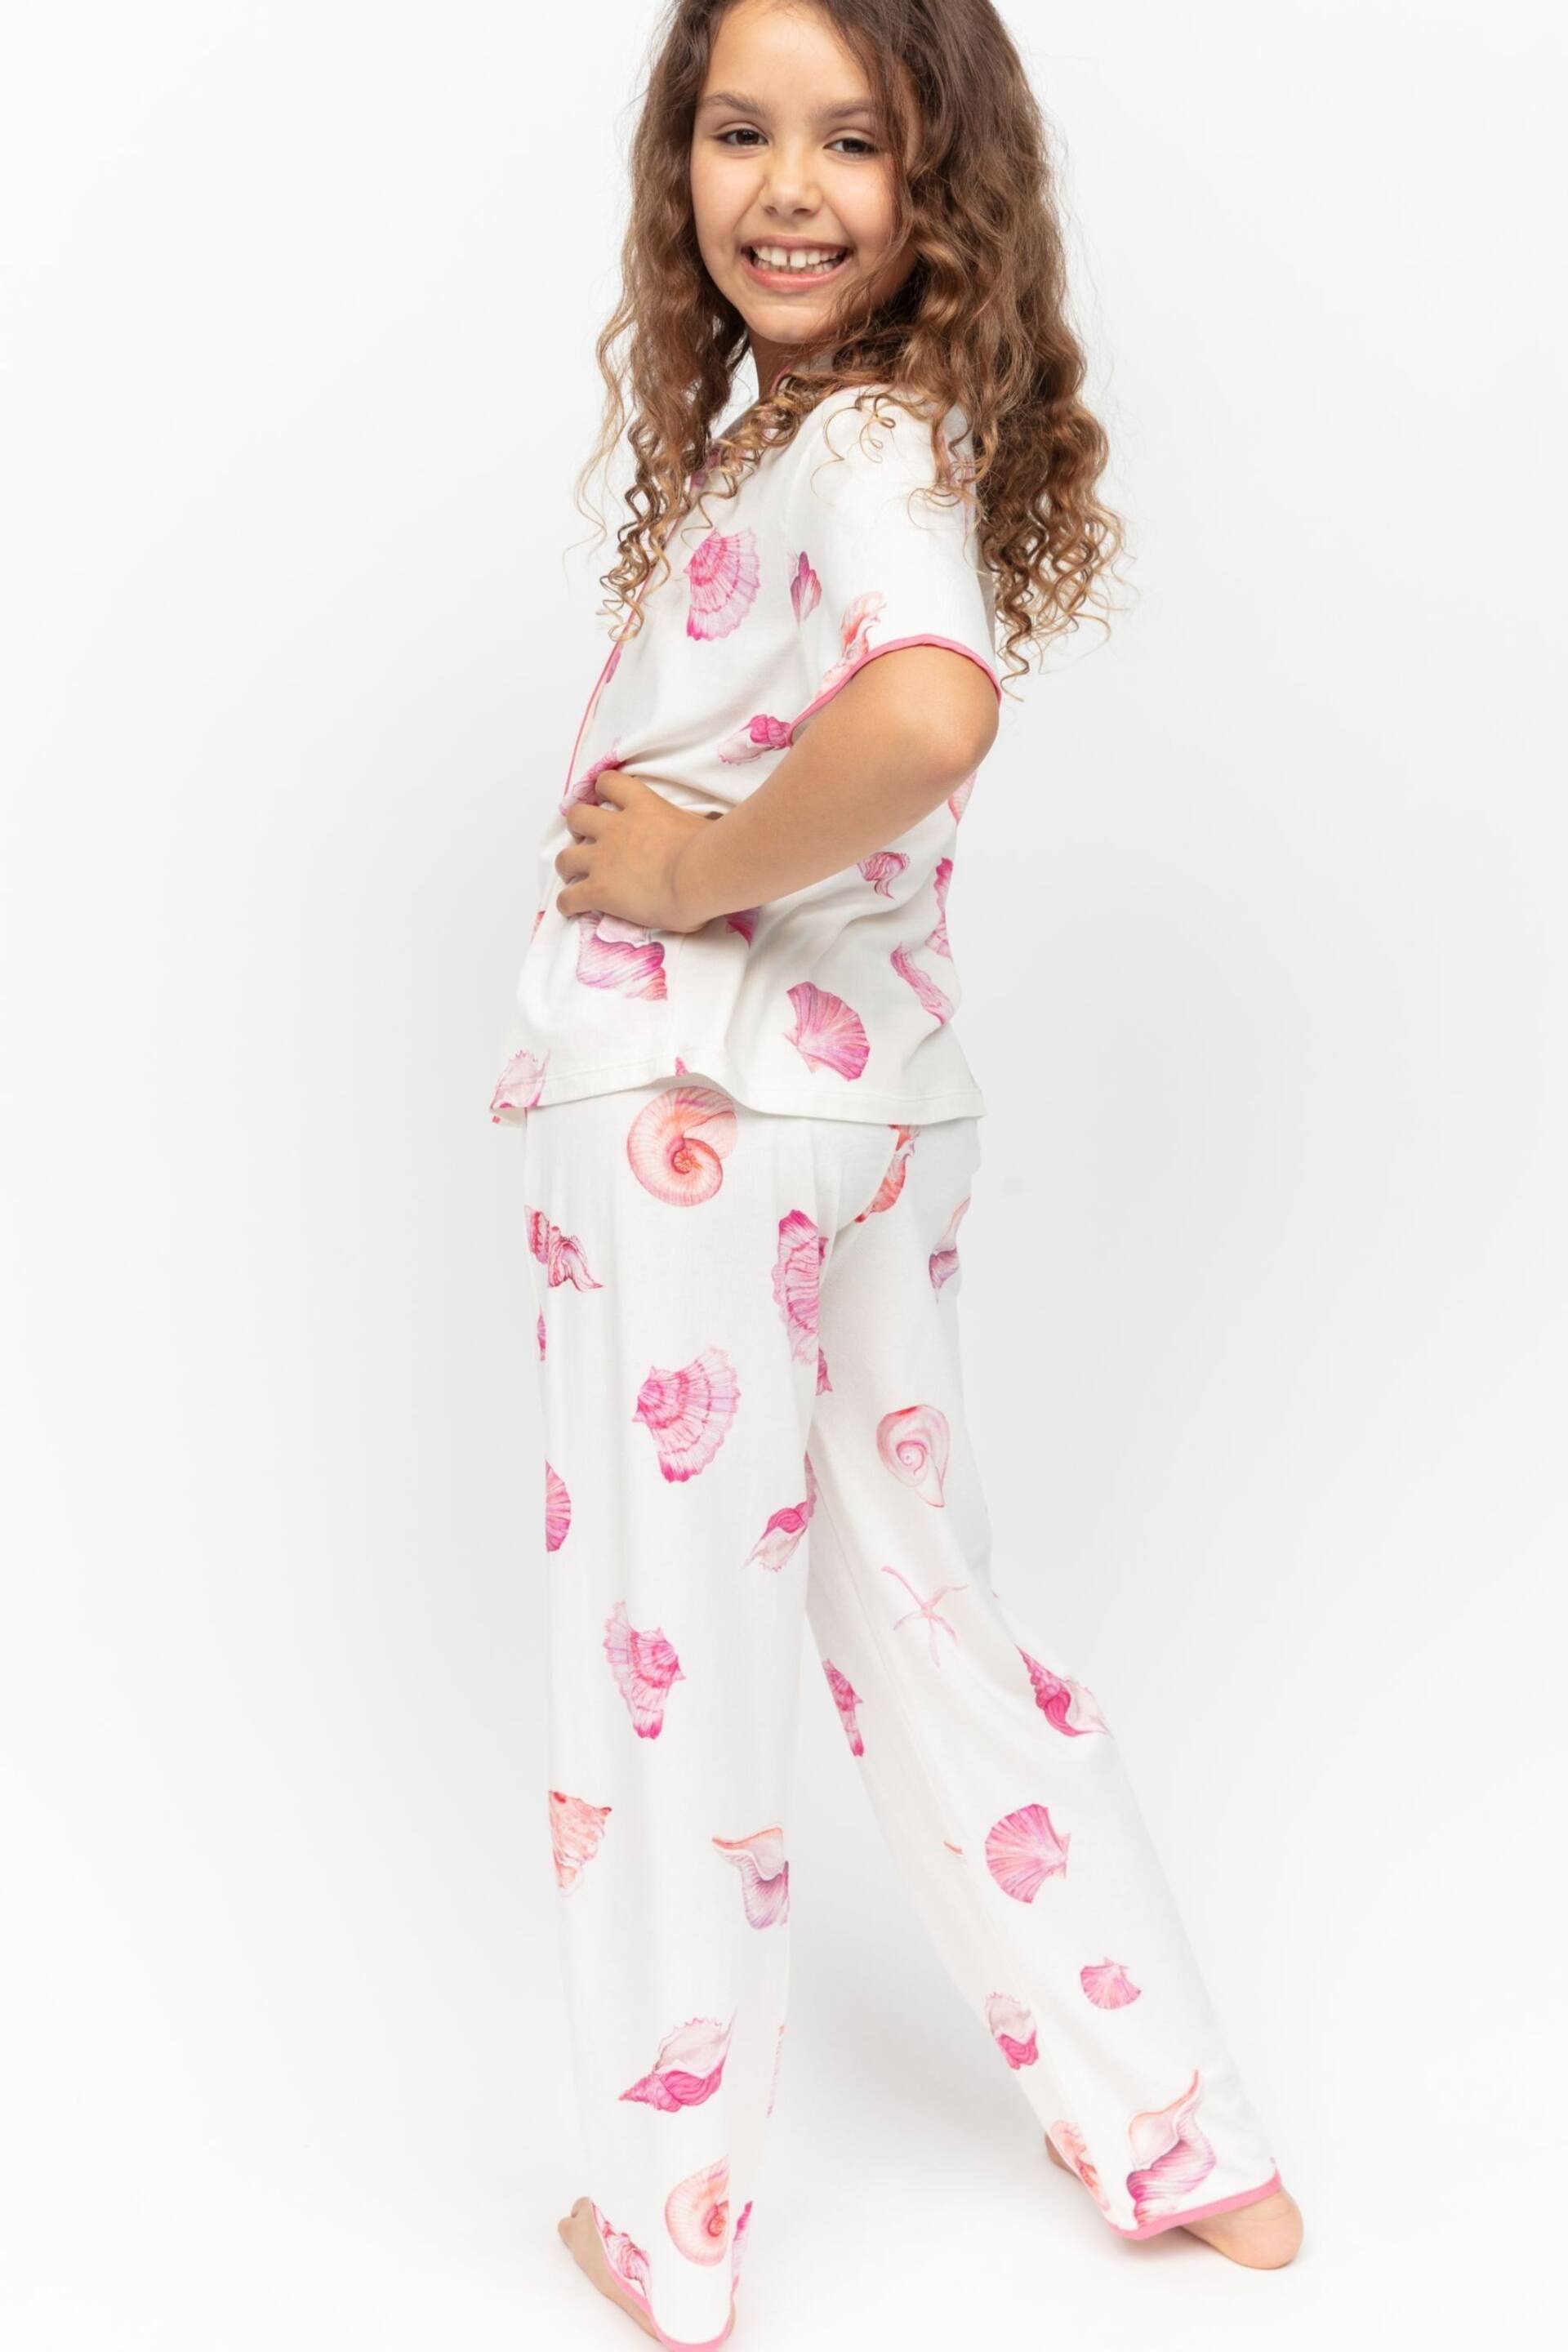 Minijammies Cream Shell Printed Jersey Short Sleeve Pyjamas Set - Image 3 of 4